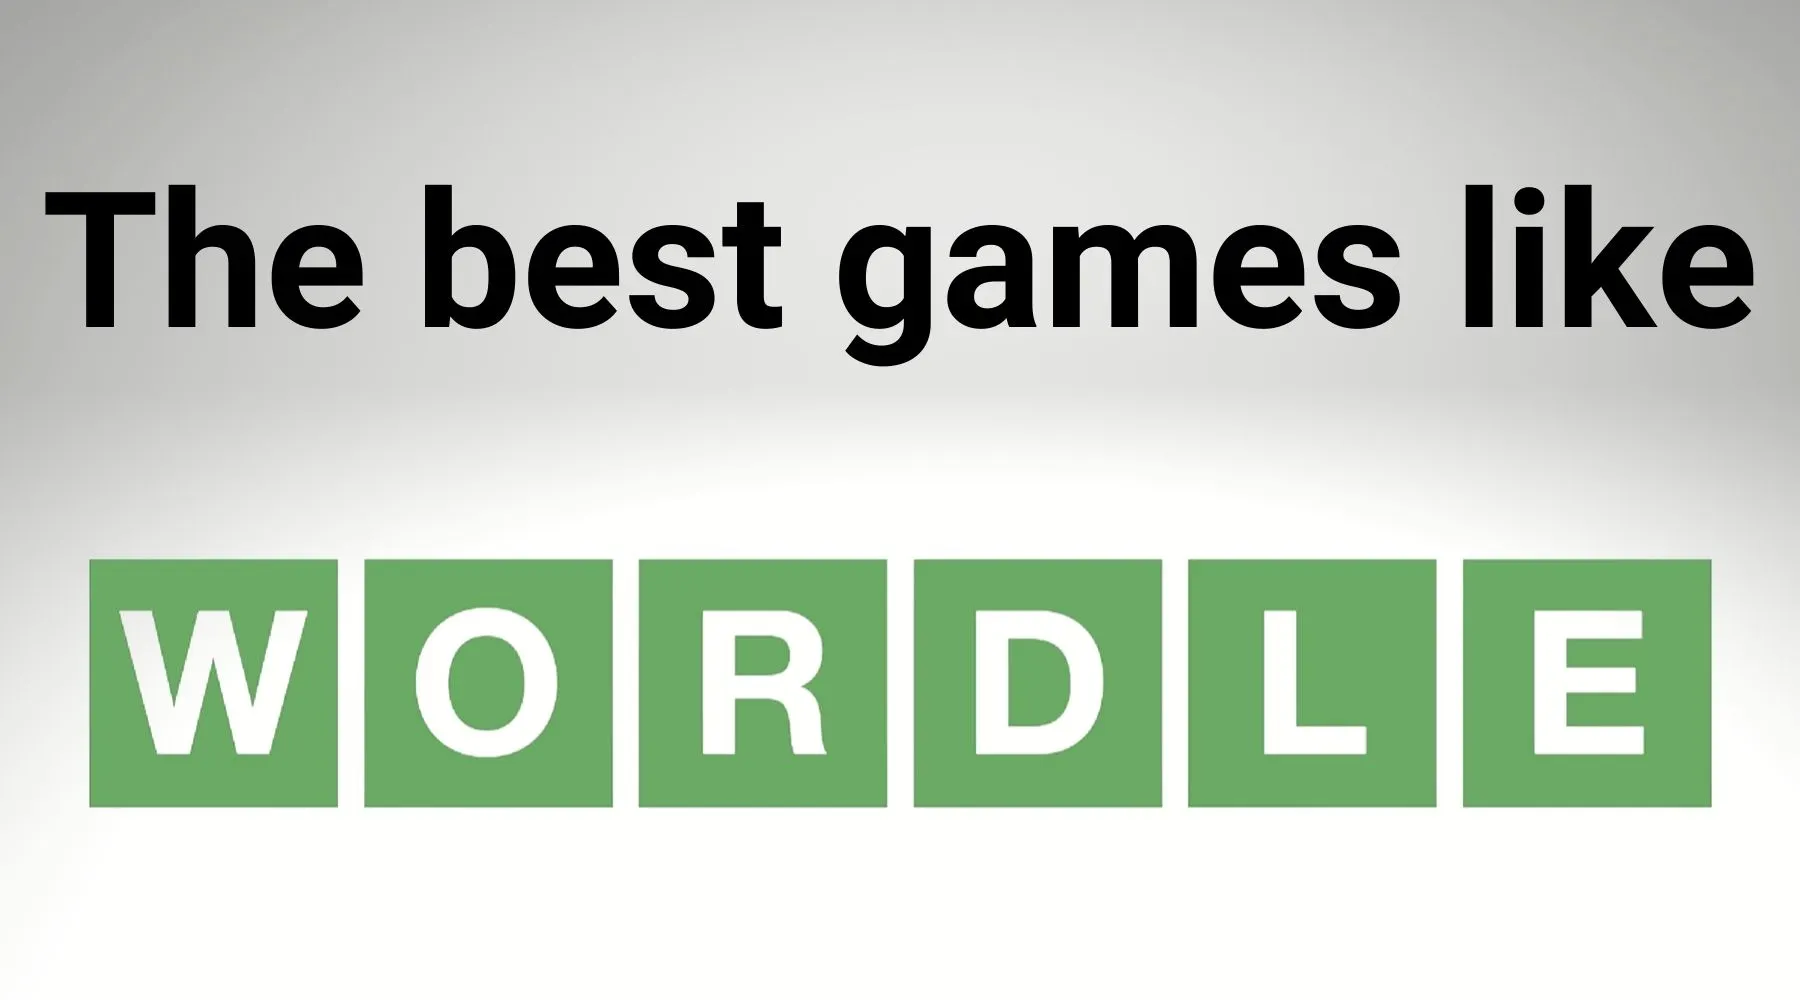 Best Games Like Wordle